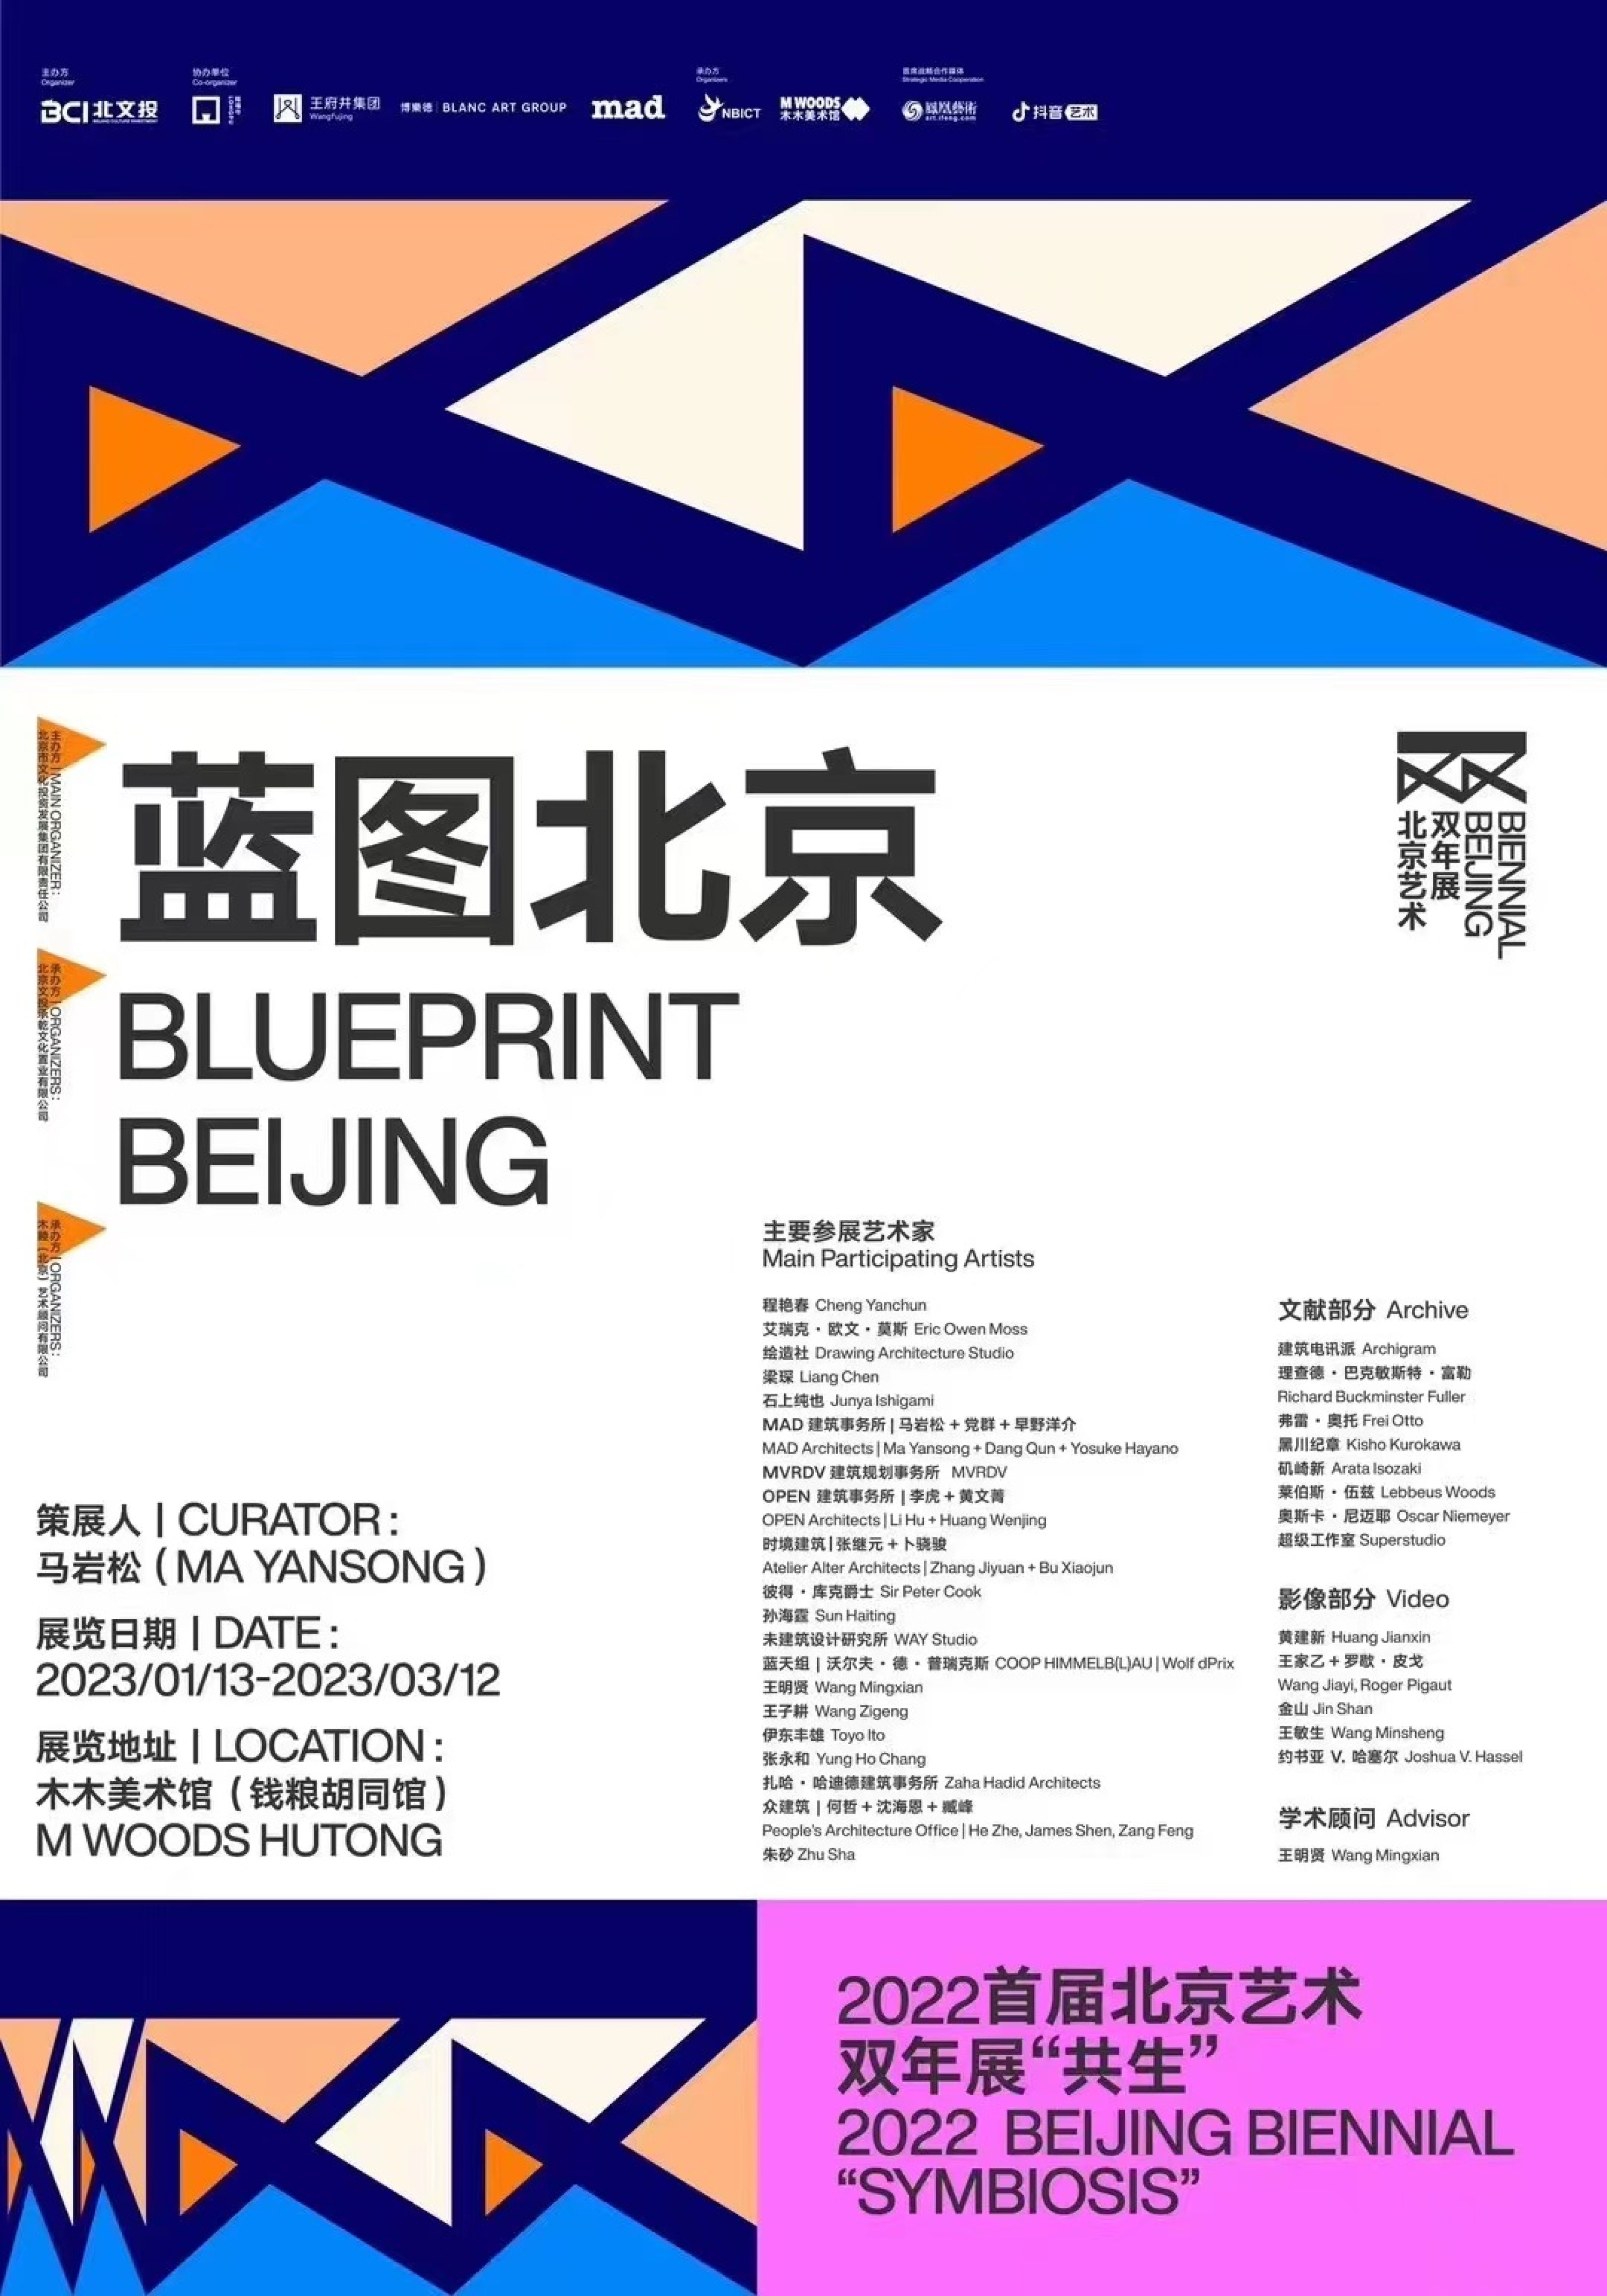 王子耕作品“想象的北京”参展2022首届北京艺术双年展建筑板块“蓝图北京”